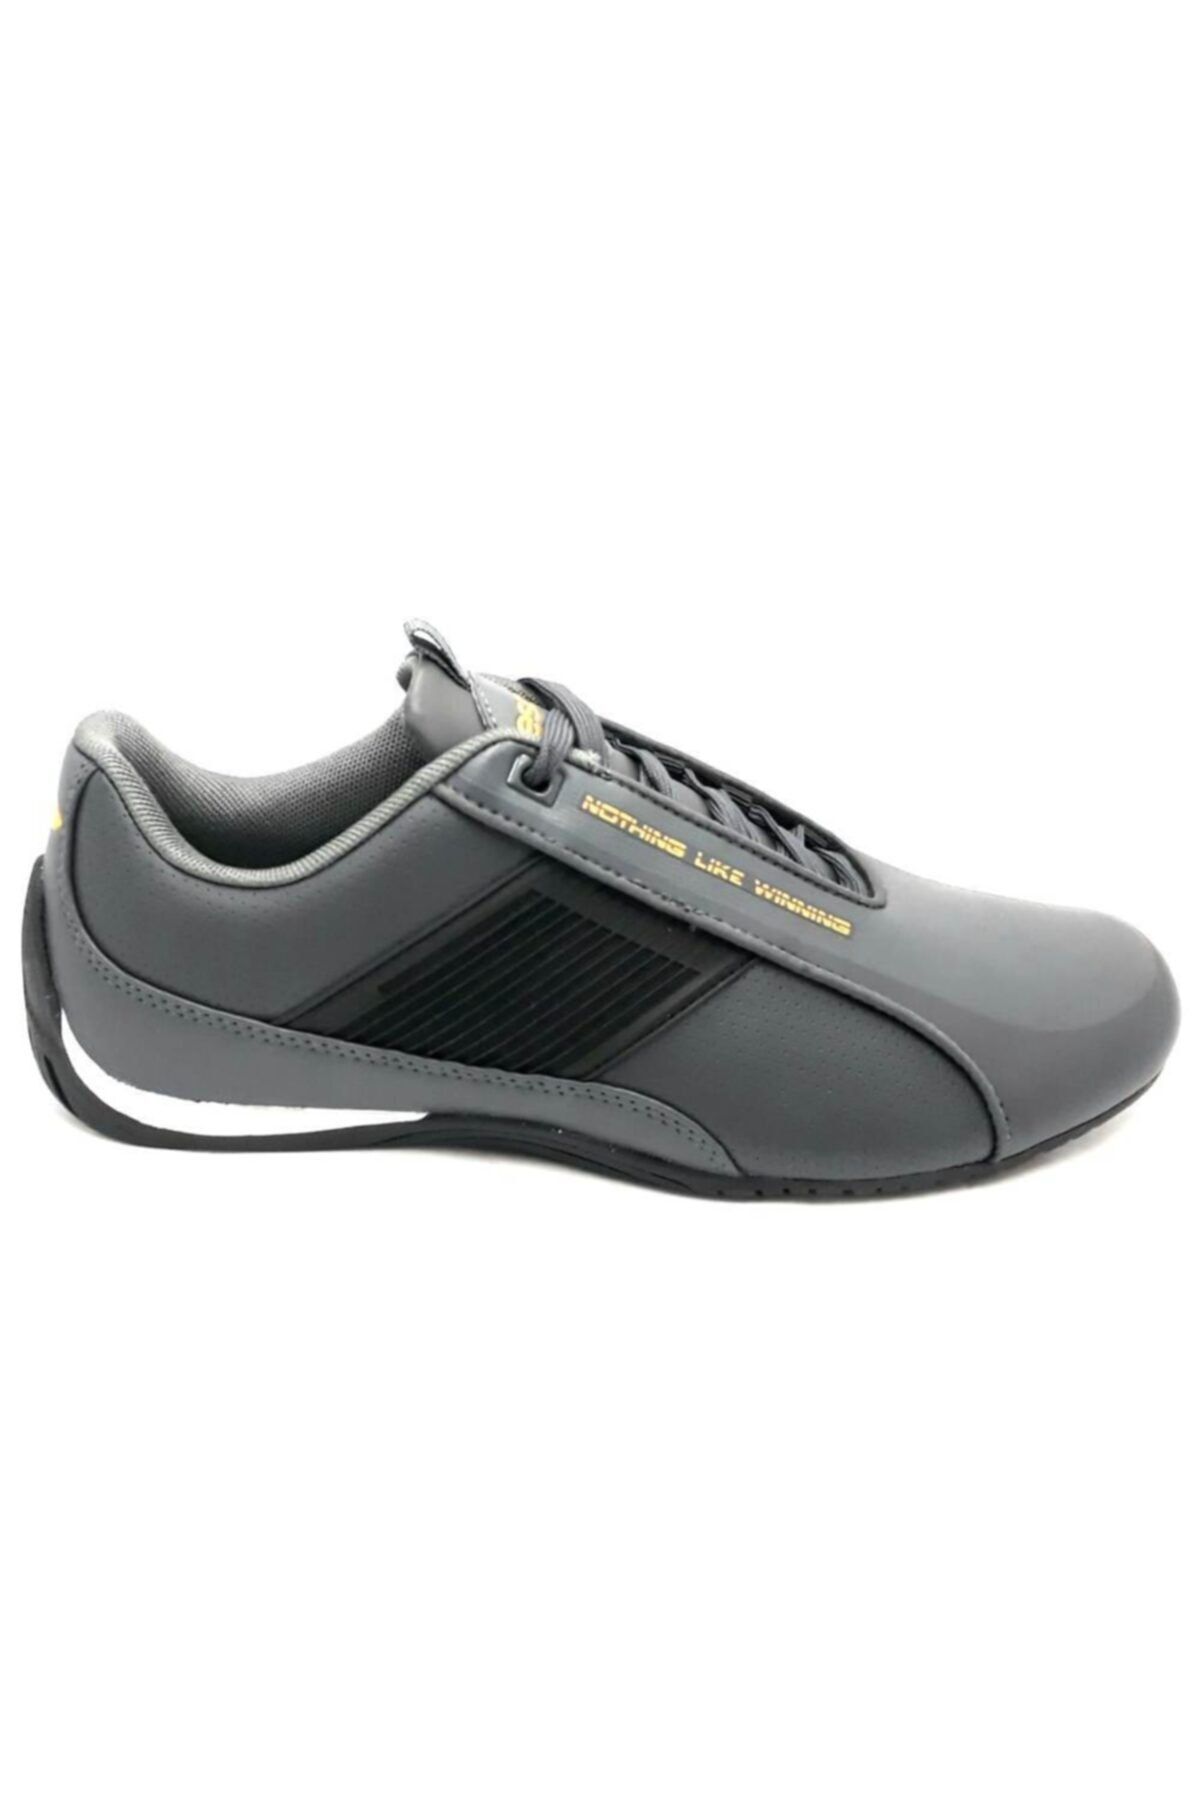 Lescon Saıler-3 Sneakers Füme Erkek Spor Ayakkabı